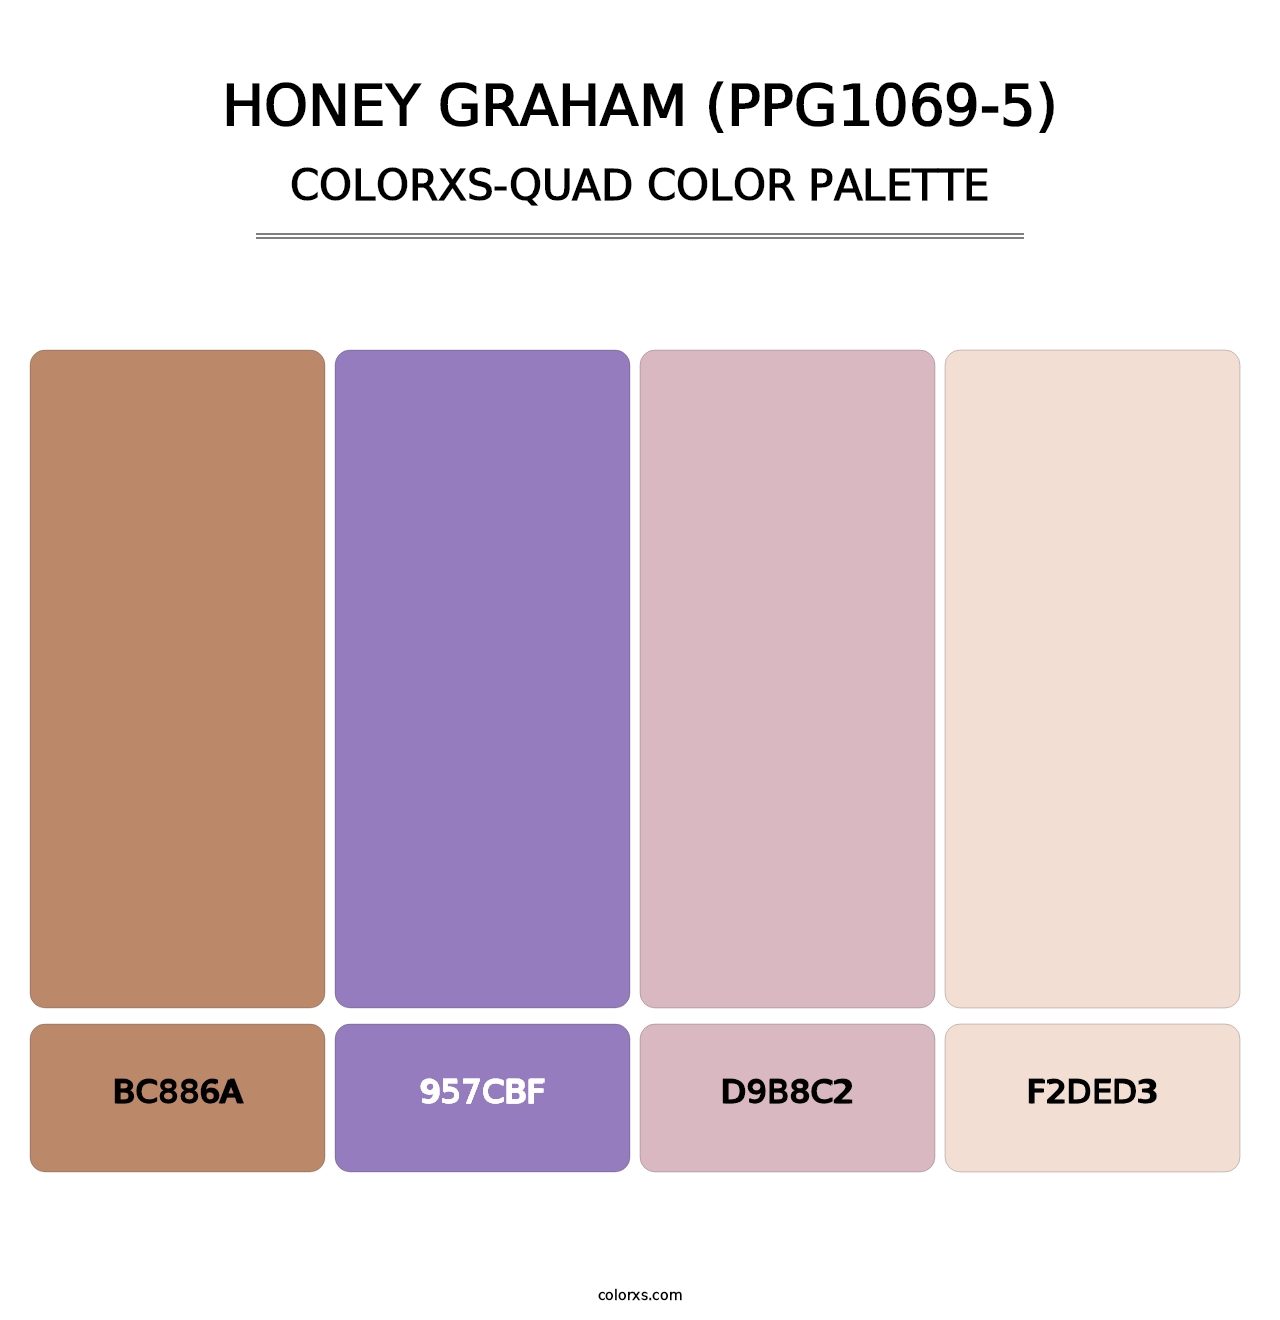 Honey Graham (PPG1069-5) - Colorxs Quad Palette